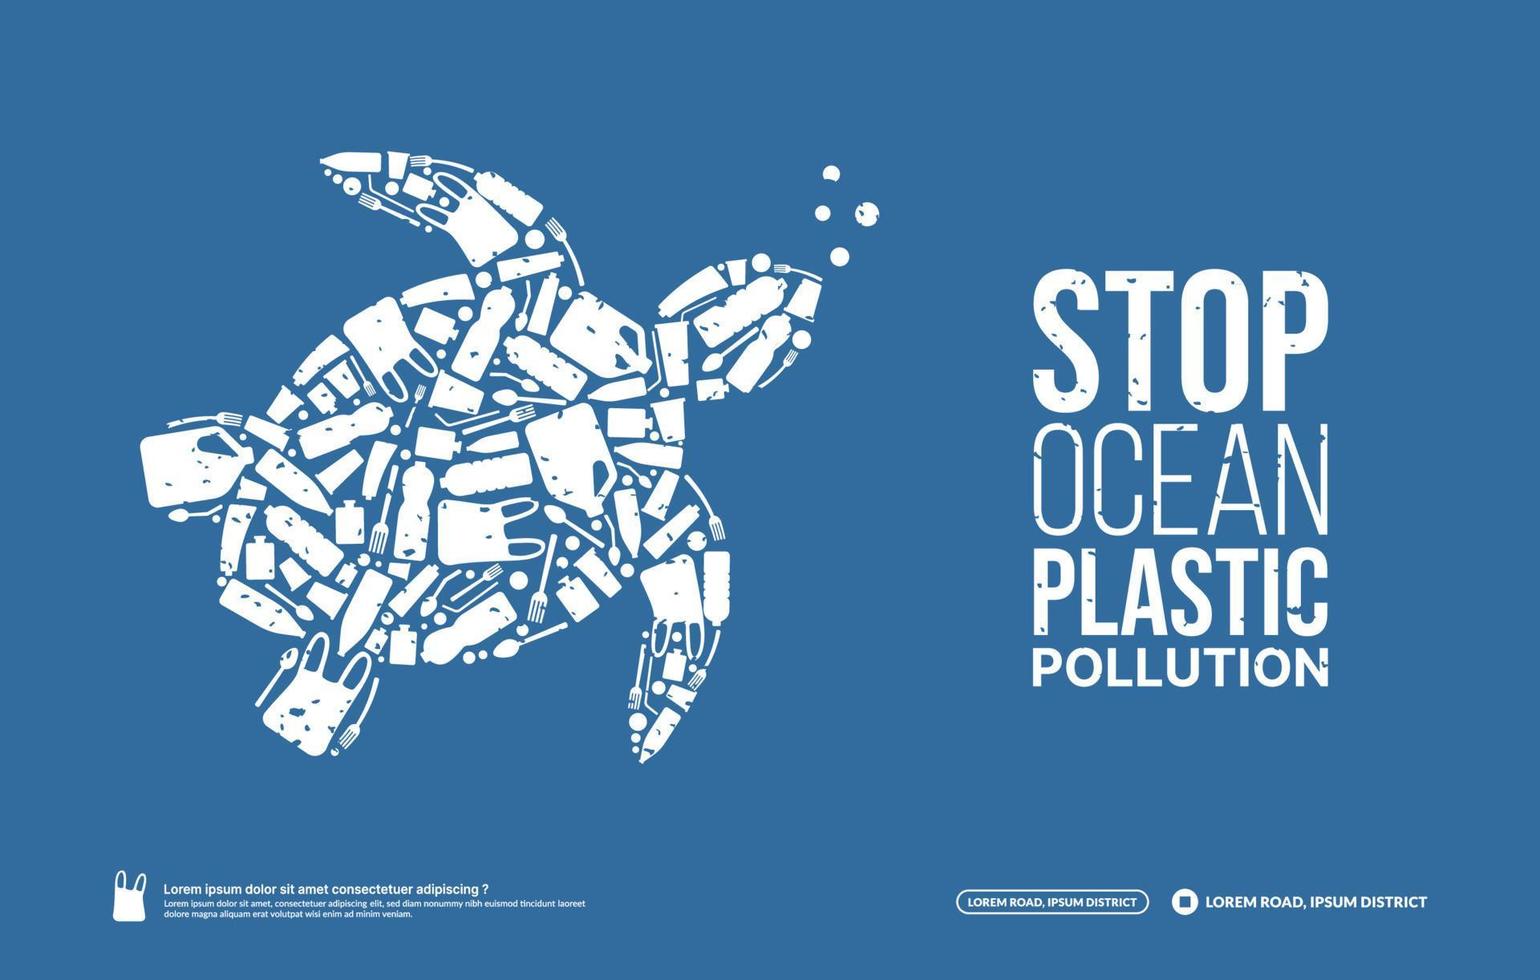 conceito de parar a poluição plástica oceânica, problema ambiental oceânico, tartaruga animal marinha composta por lixo plástico, dia mundial do oceano vetor